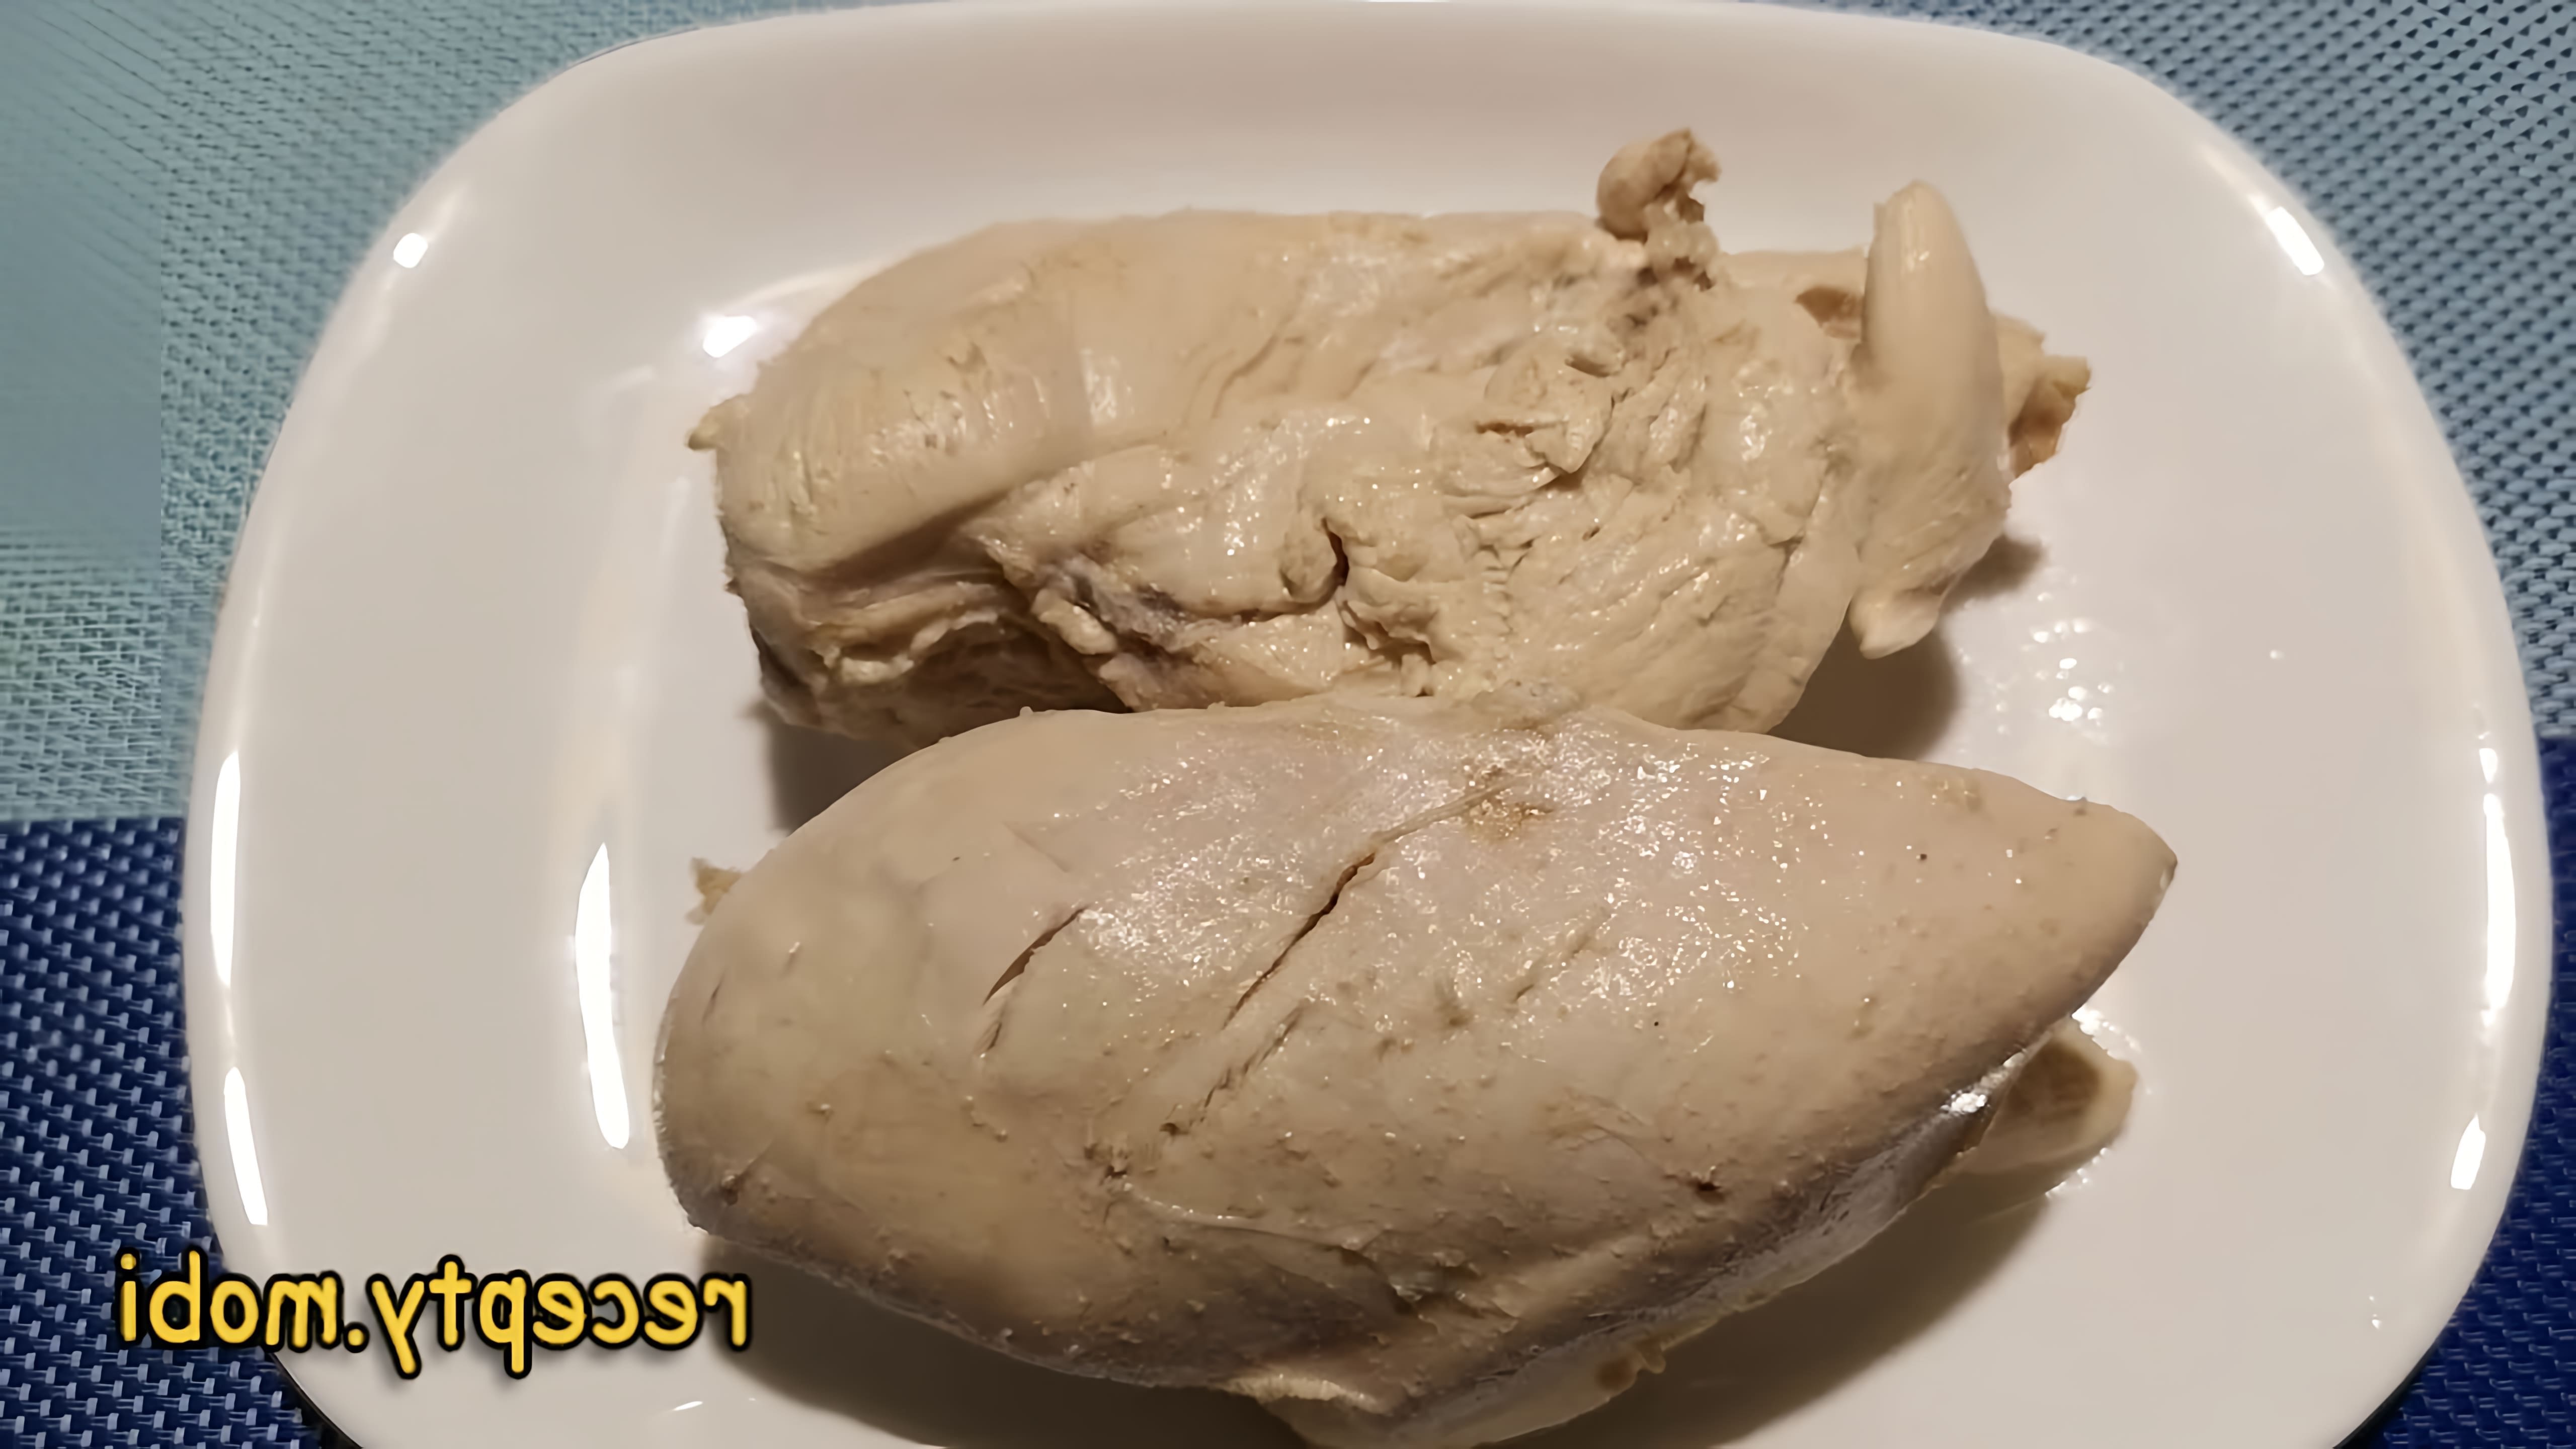 В этом видео демонстрируется процесс приготовления куриного филе в кастрюле